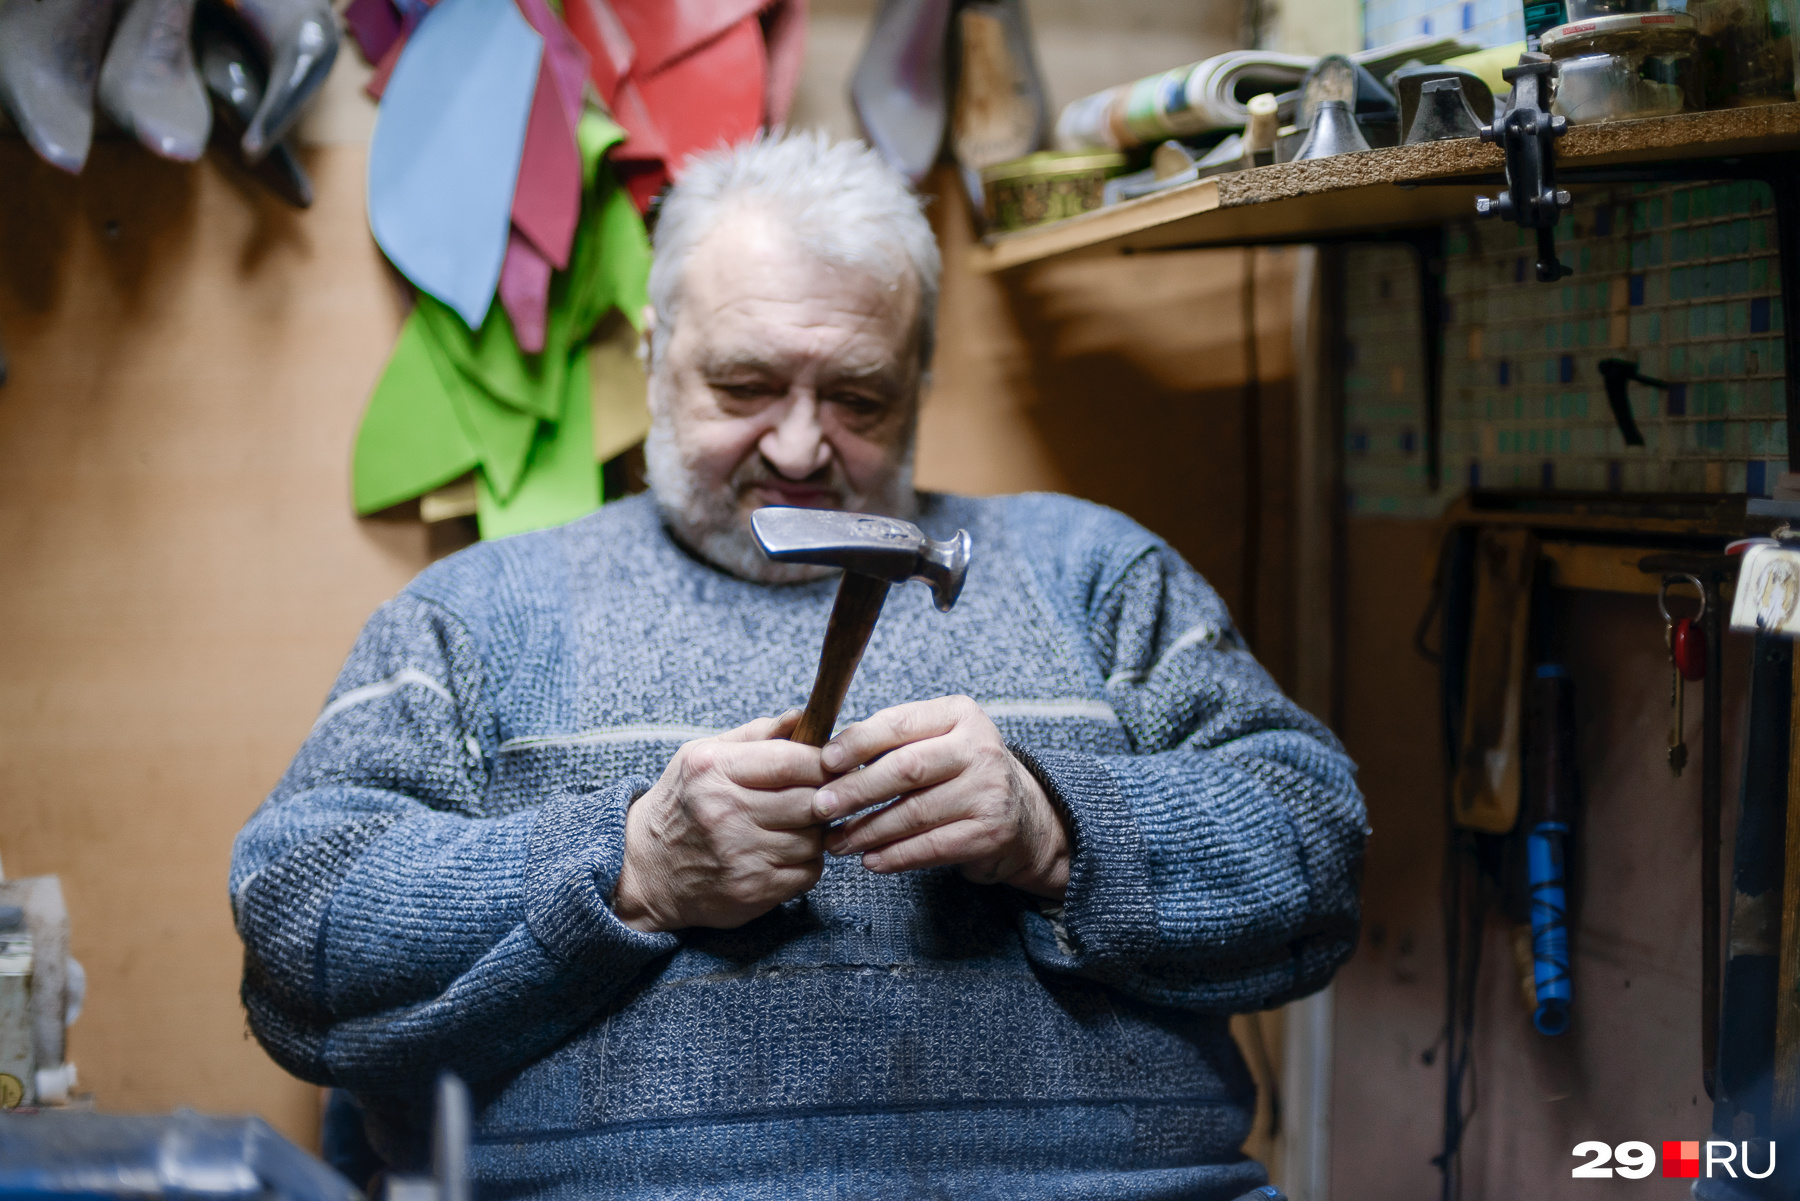 Ирландский молоток с 200-летней историей мастеру подарил реставратор, которому понравился хамон, приготовленный Артушем